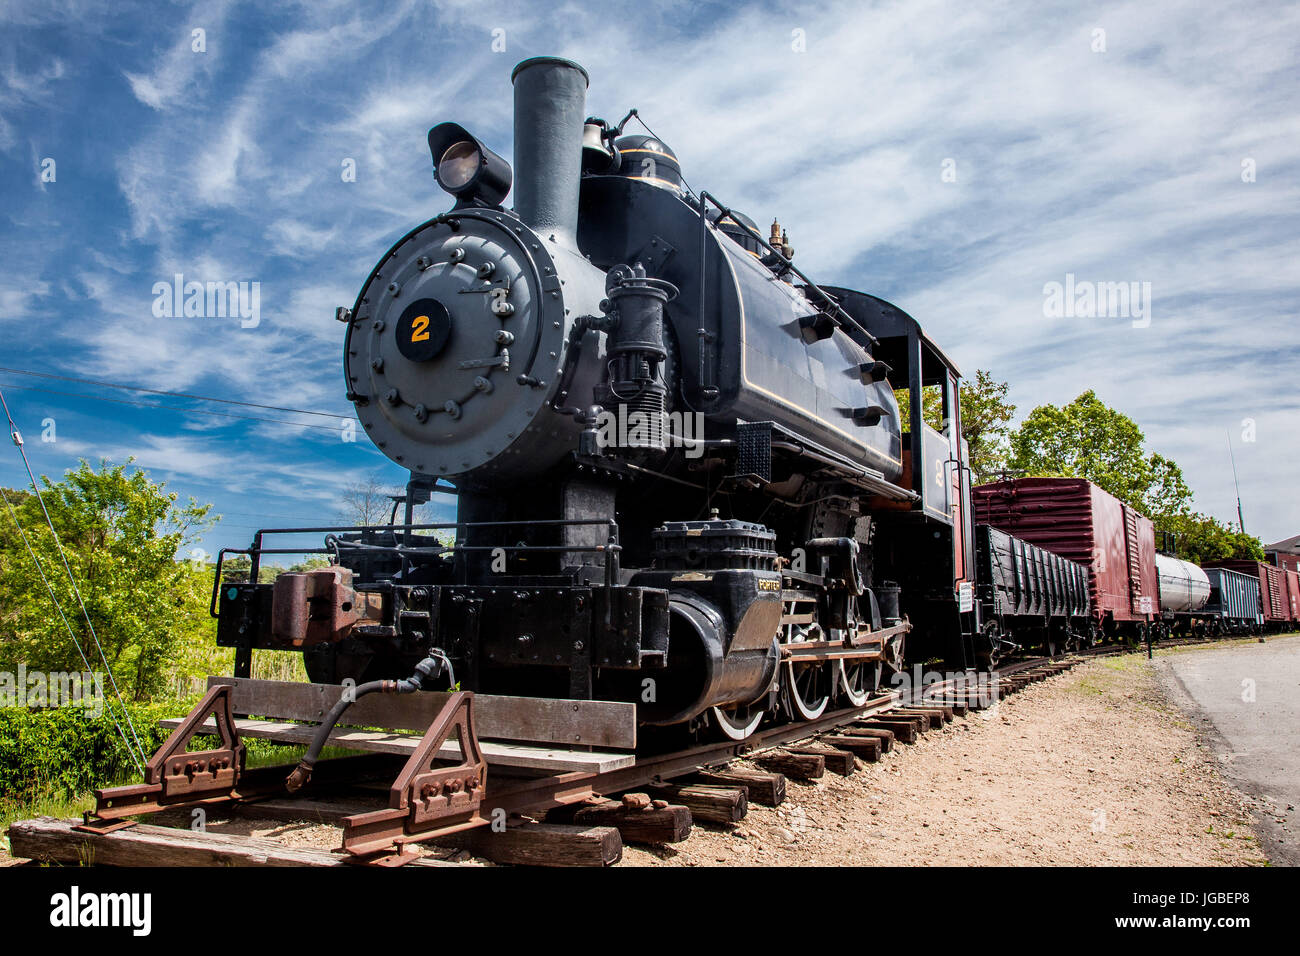 L'ESSEX - 24 MAI : Connecticut Valley Railroad Locomotive Train à vapeur dans l'Essex, Massachusetts, USA le 24 mai 2015 Banque D'Images